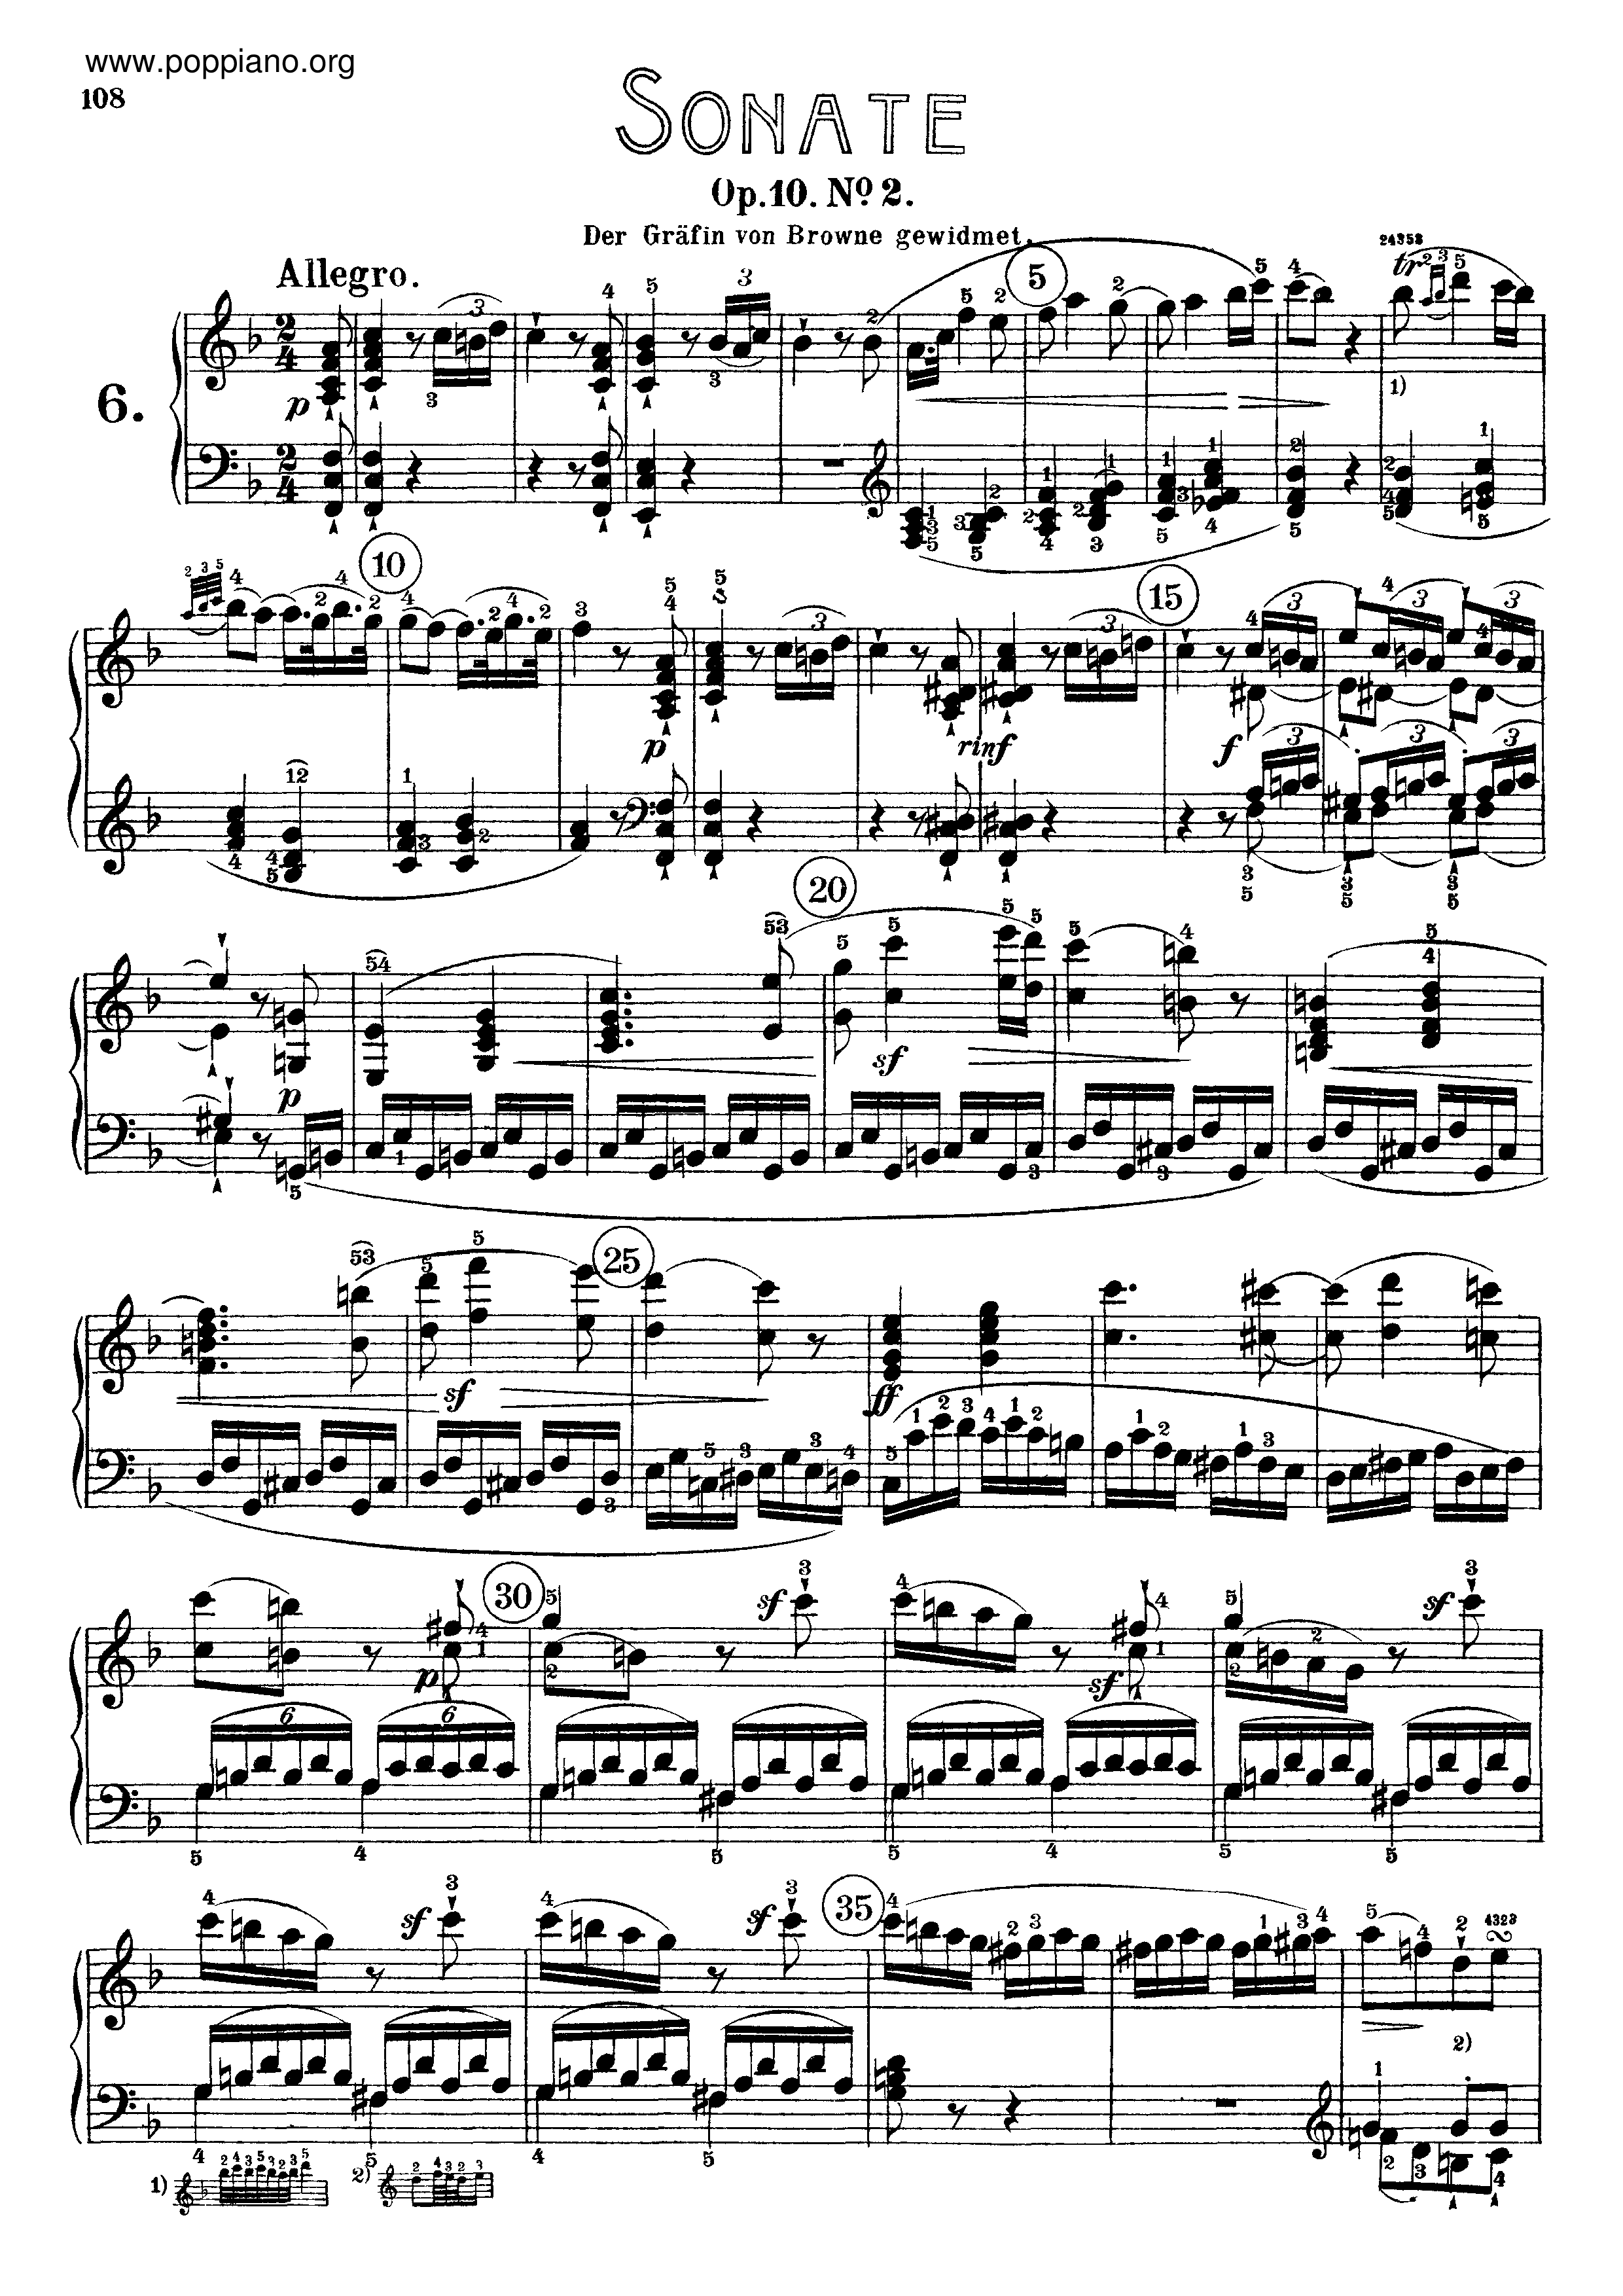 Sonata No. 6 in F major Score